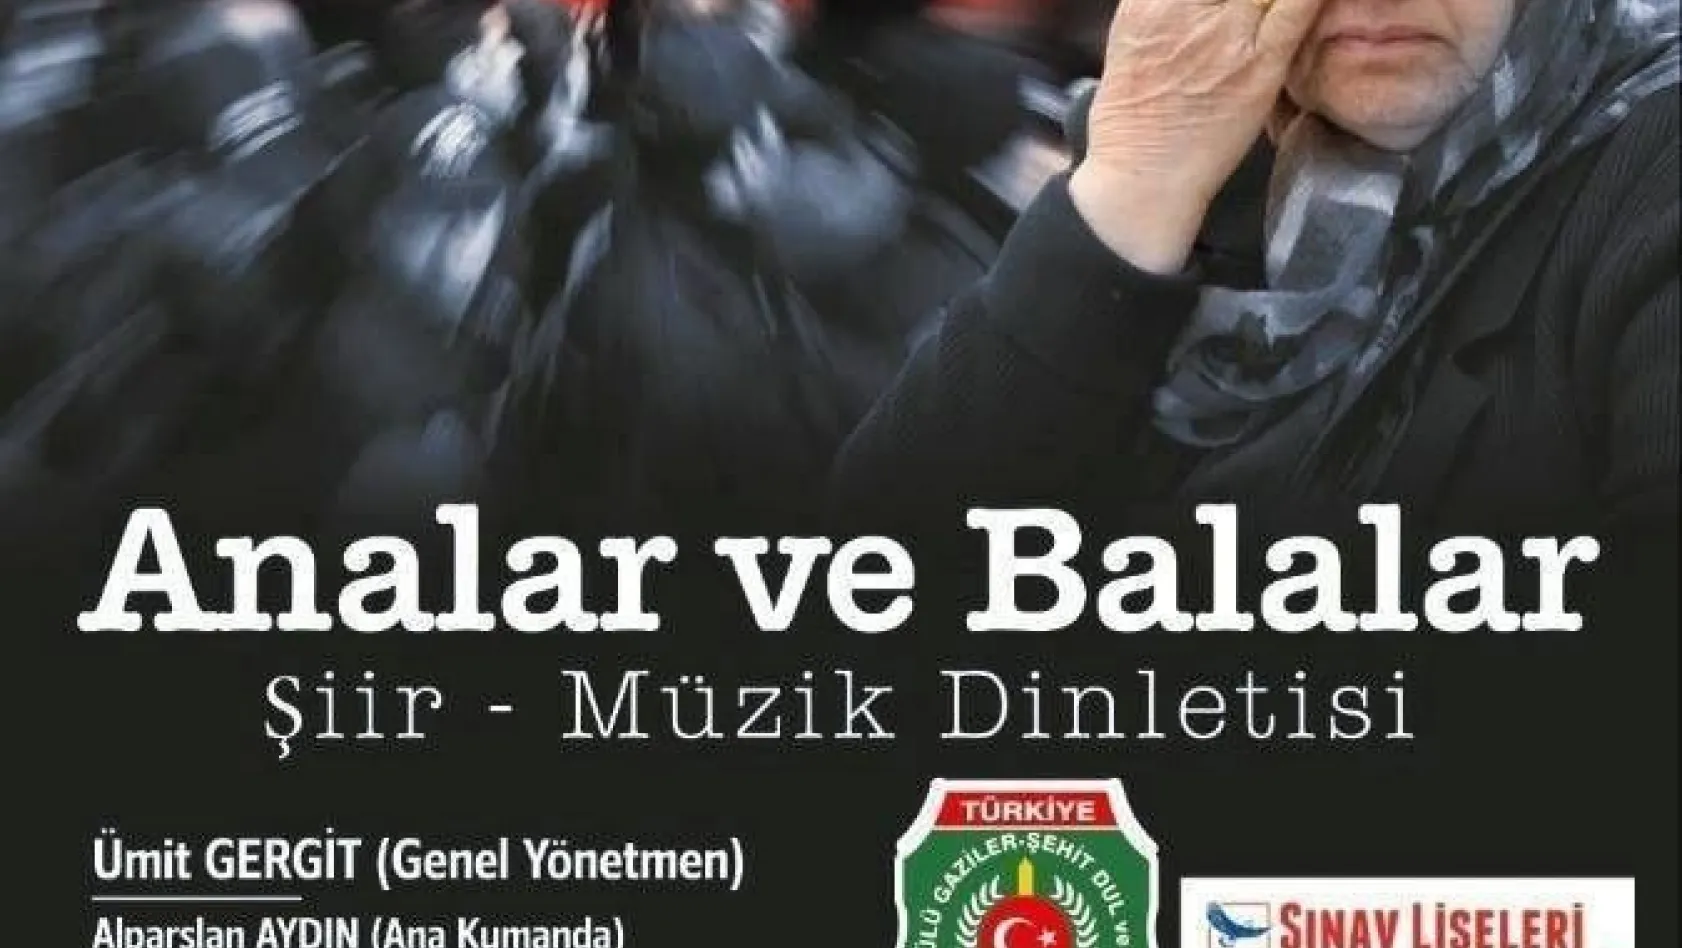 Erzurum'da 'Analar ve Balalar' isimli şiir ve müzik dinletisi
